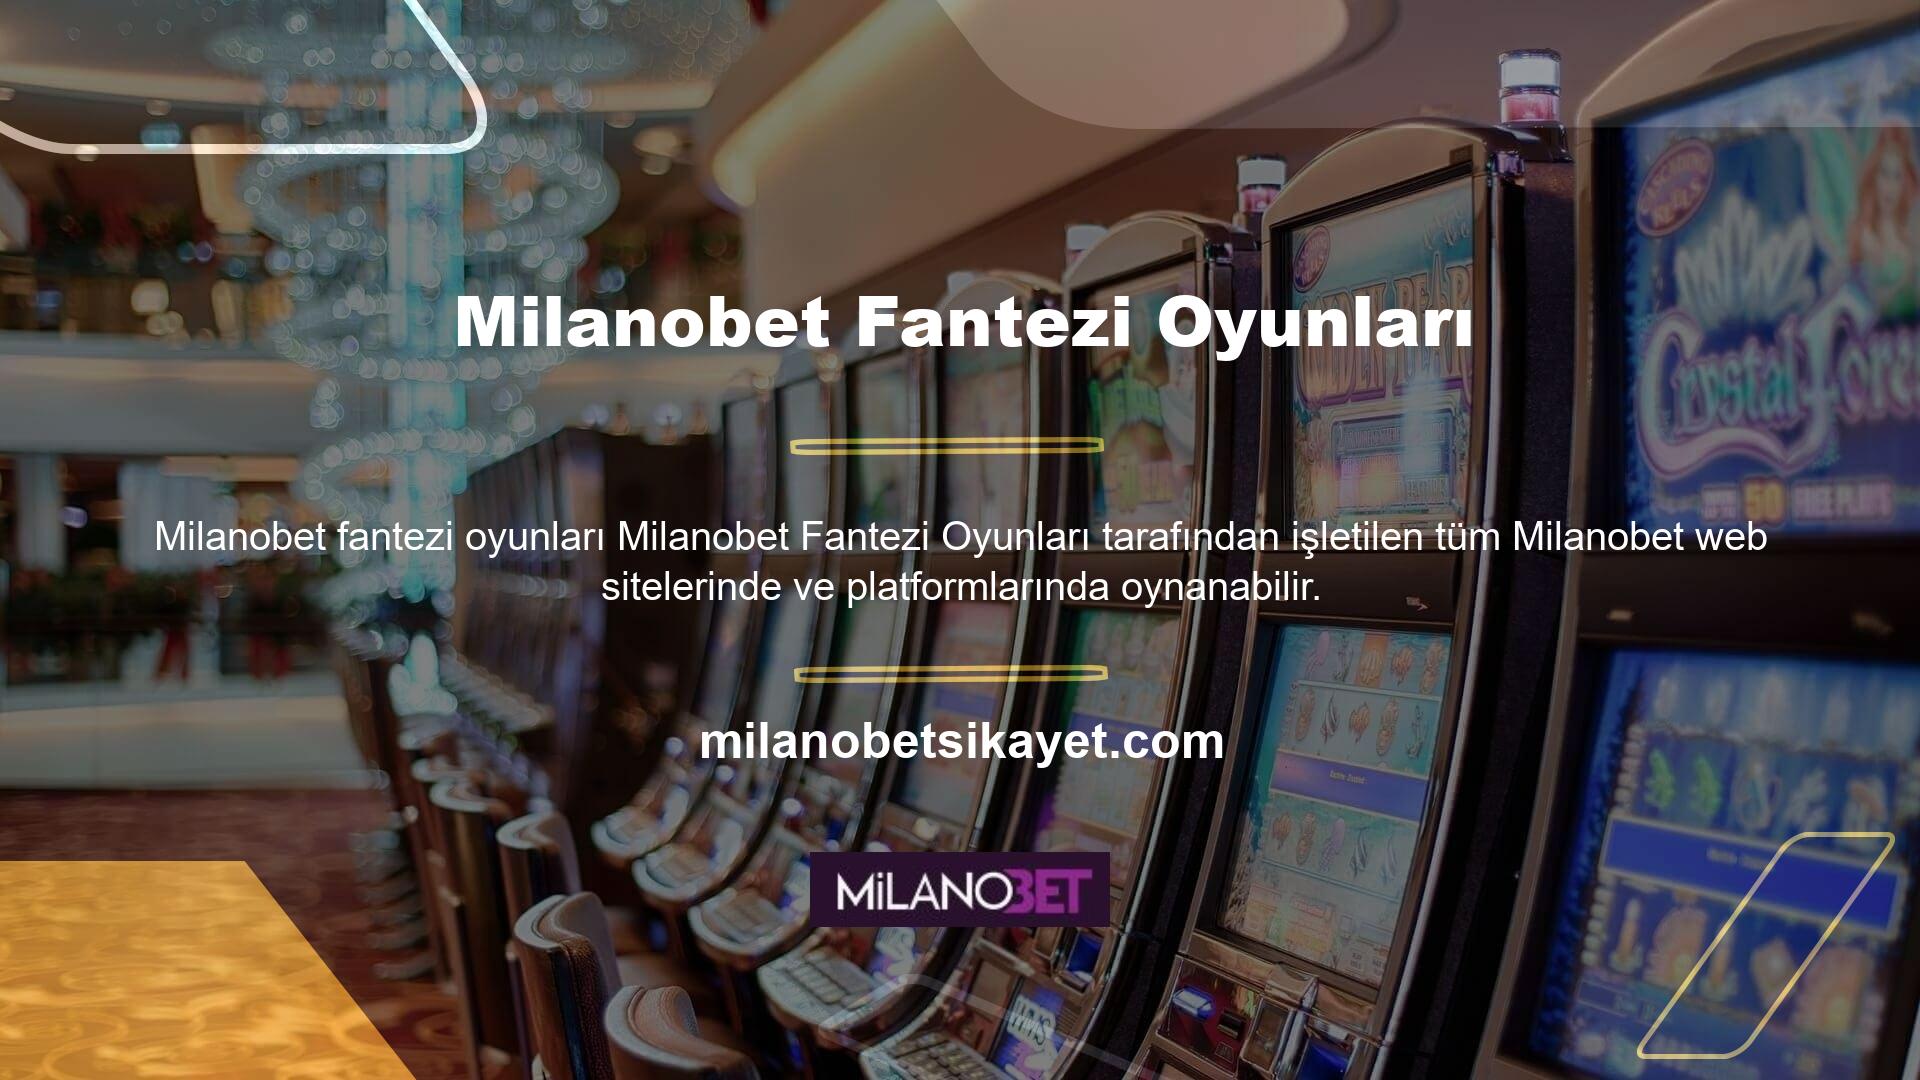 Milanobet adı altında faaliyet gösteren yüzlerce Milanobet sitesi, Milanobet Fantezi Oyunları platformunu kullanmaktadır